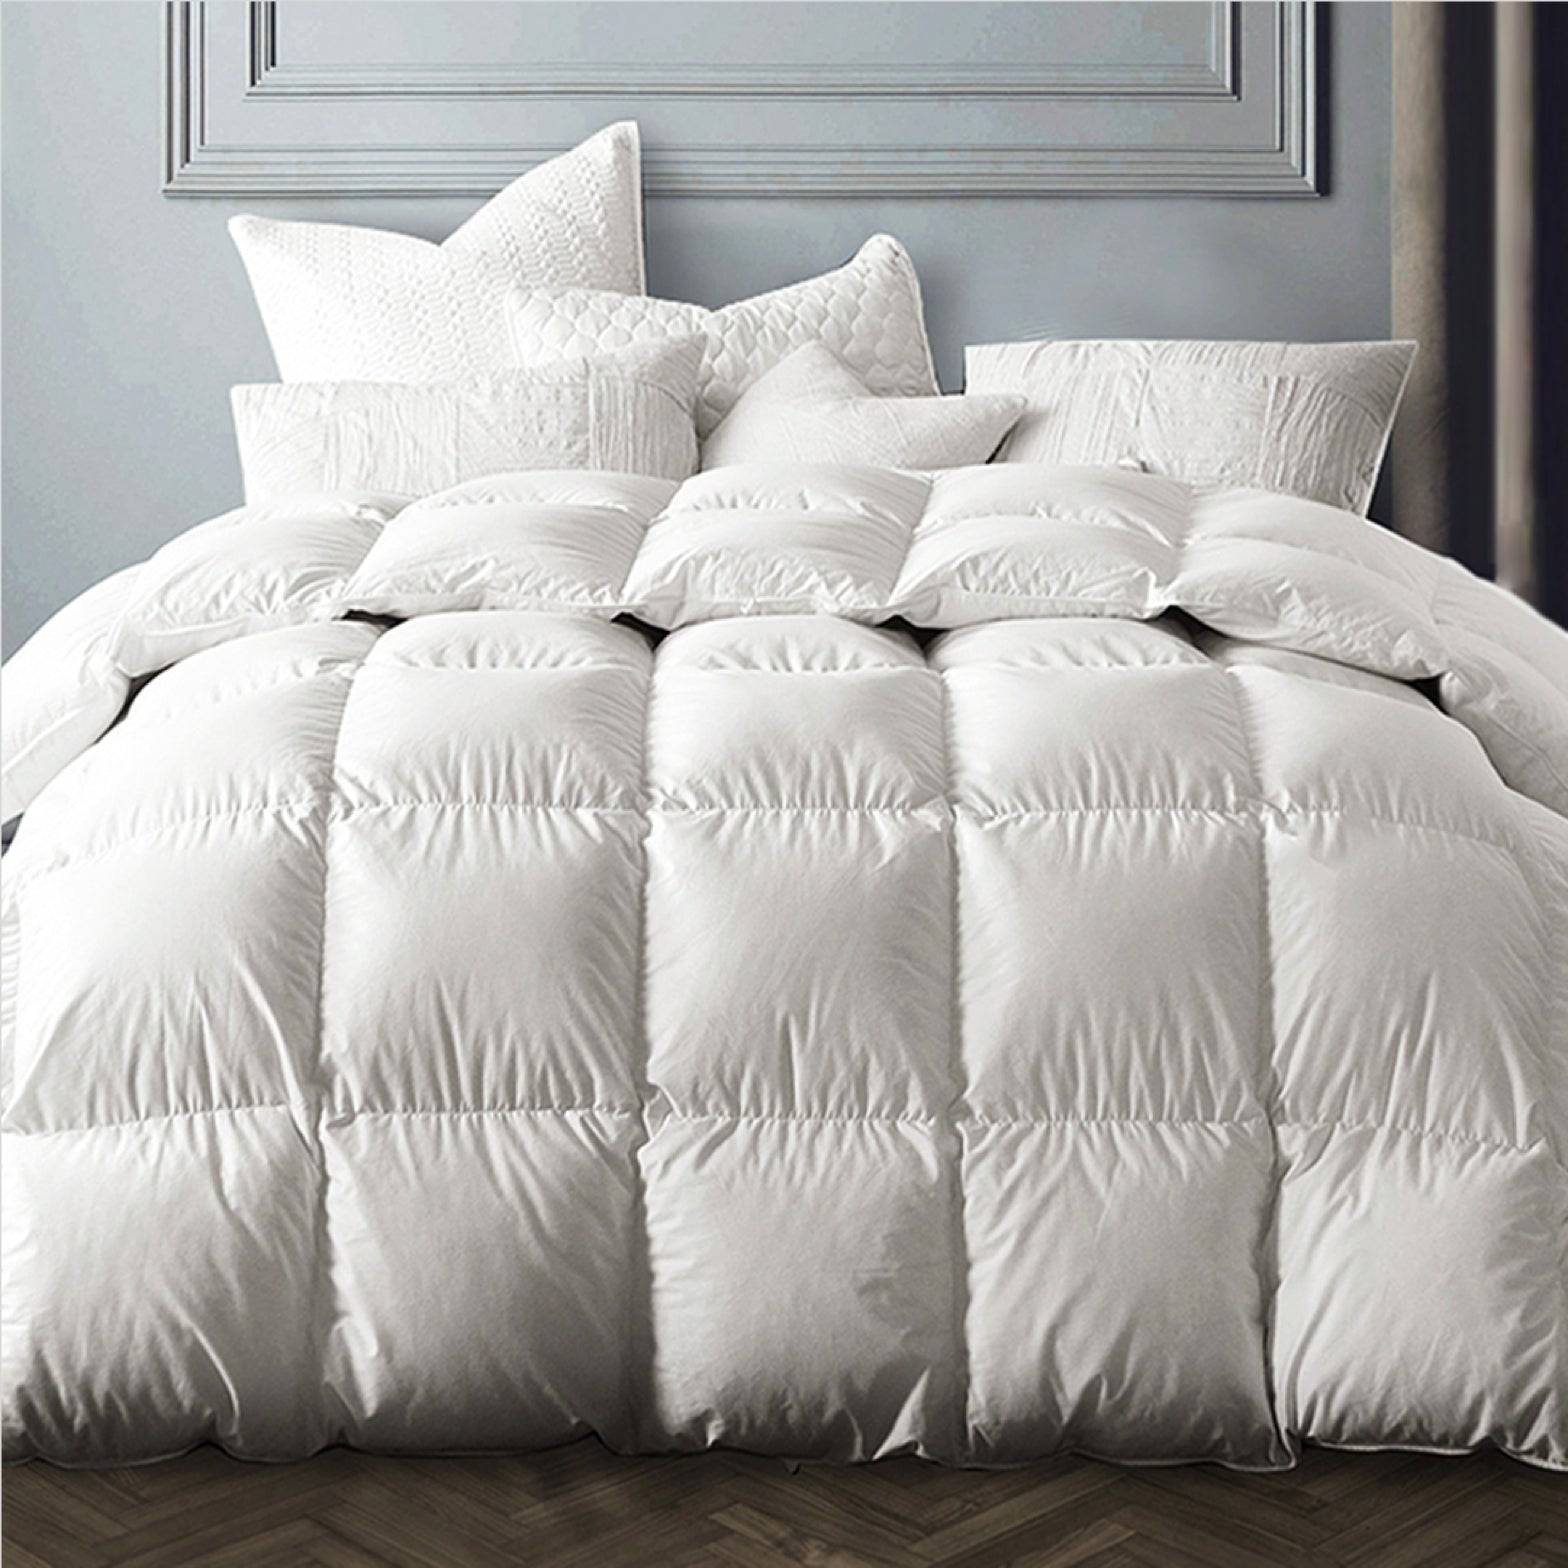 Texcote Fluffy Winter/All Season White Goose Down Comforter | warmkisshome